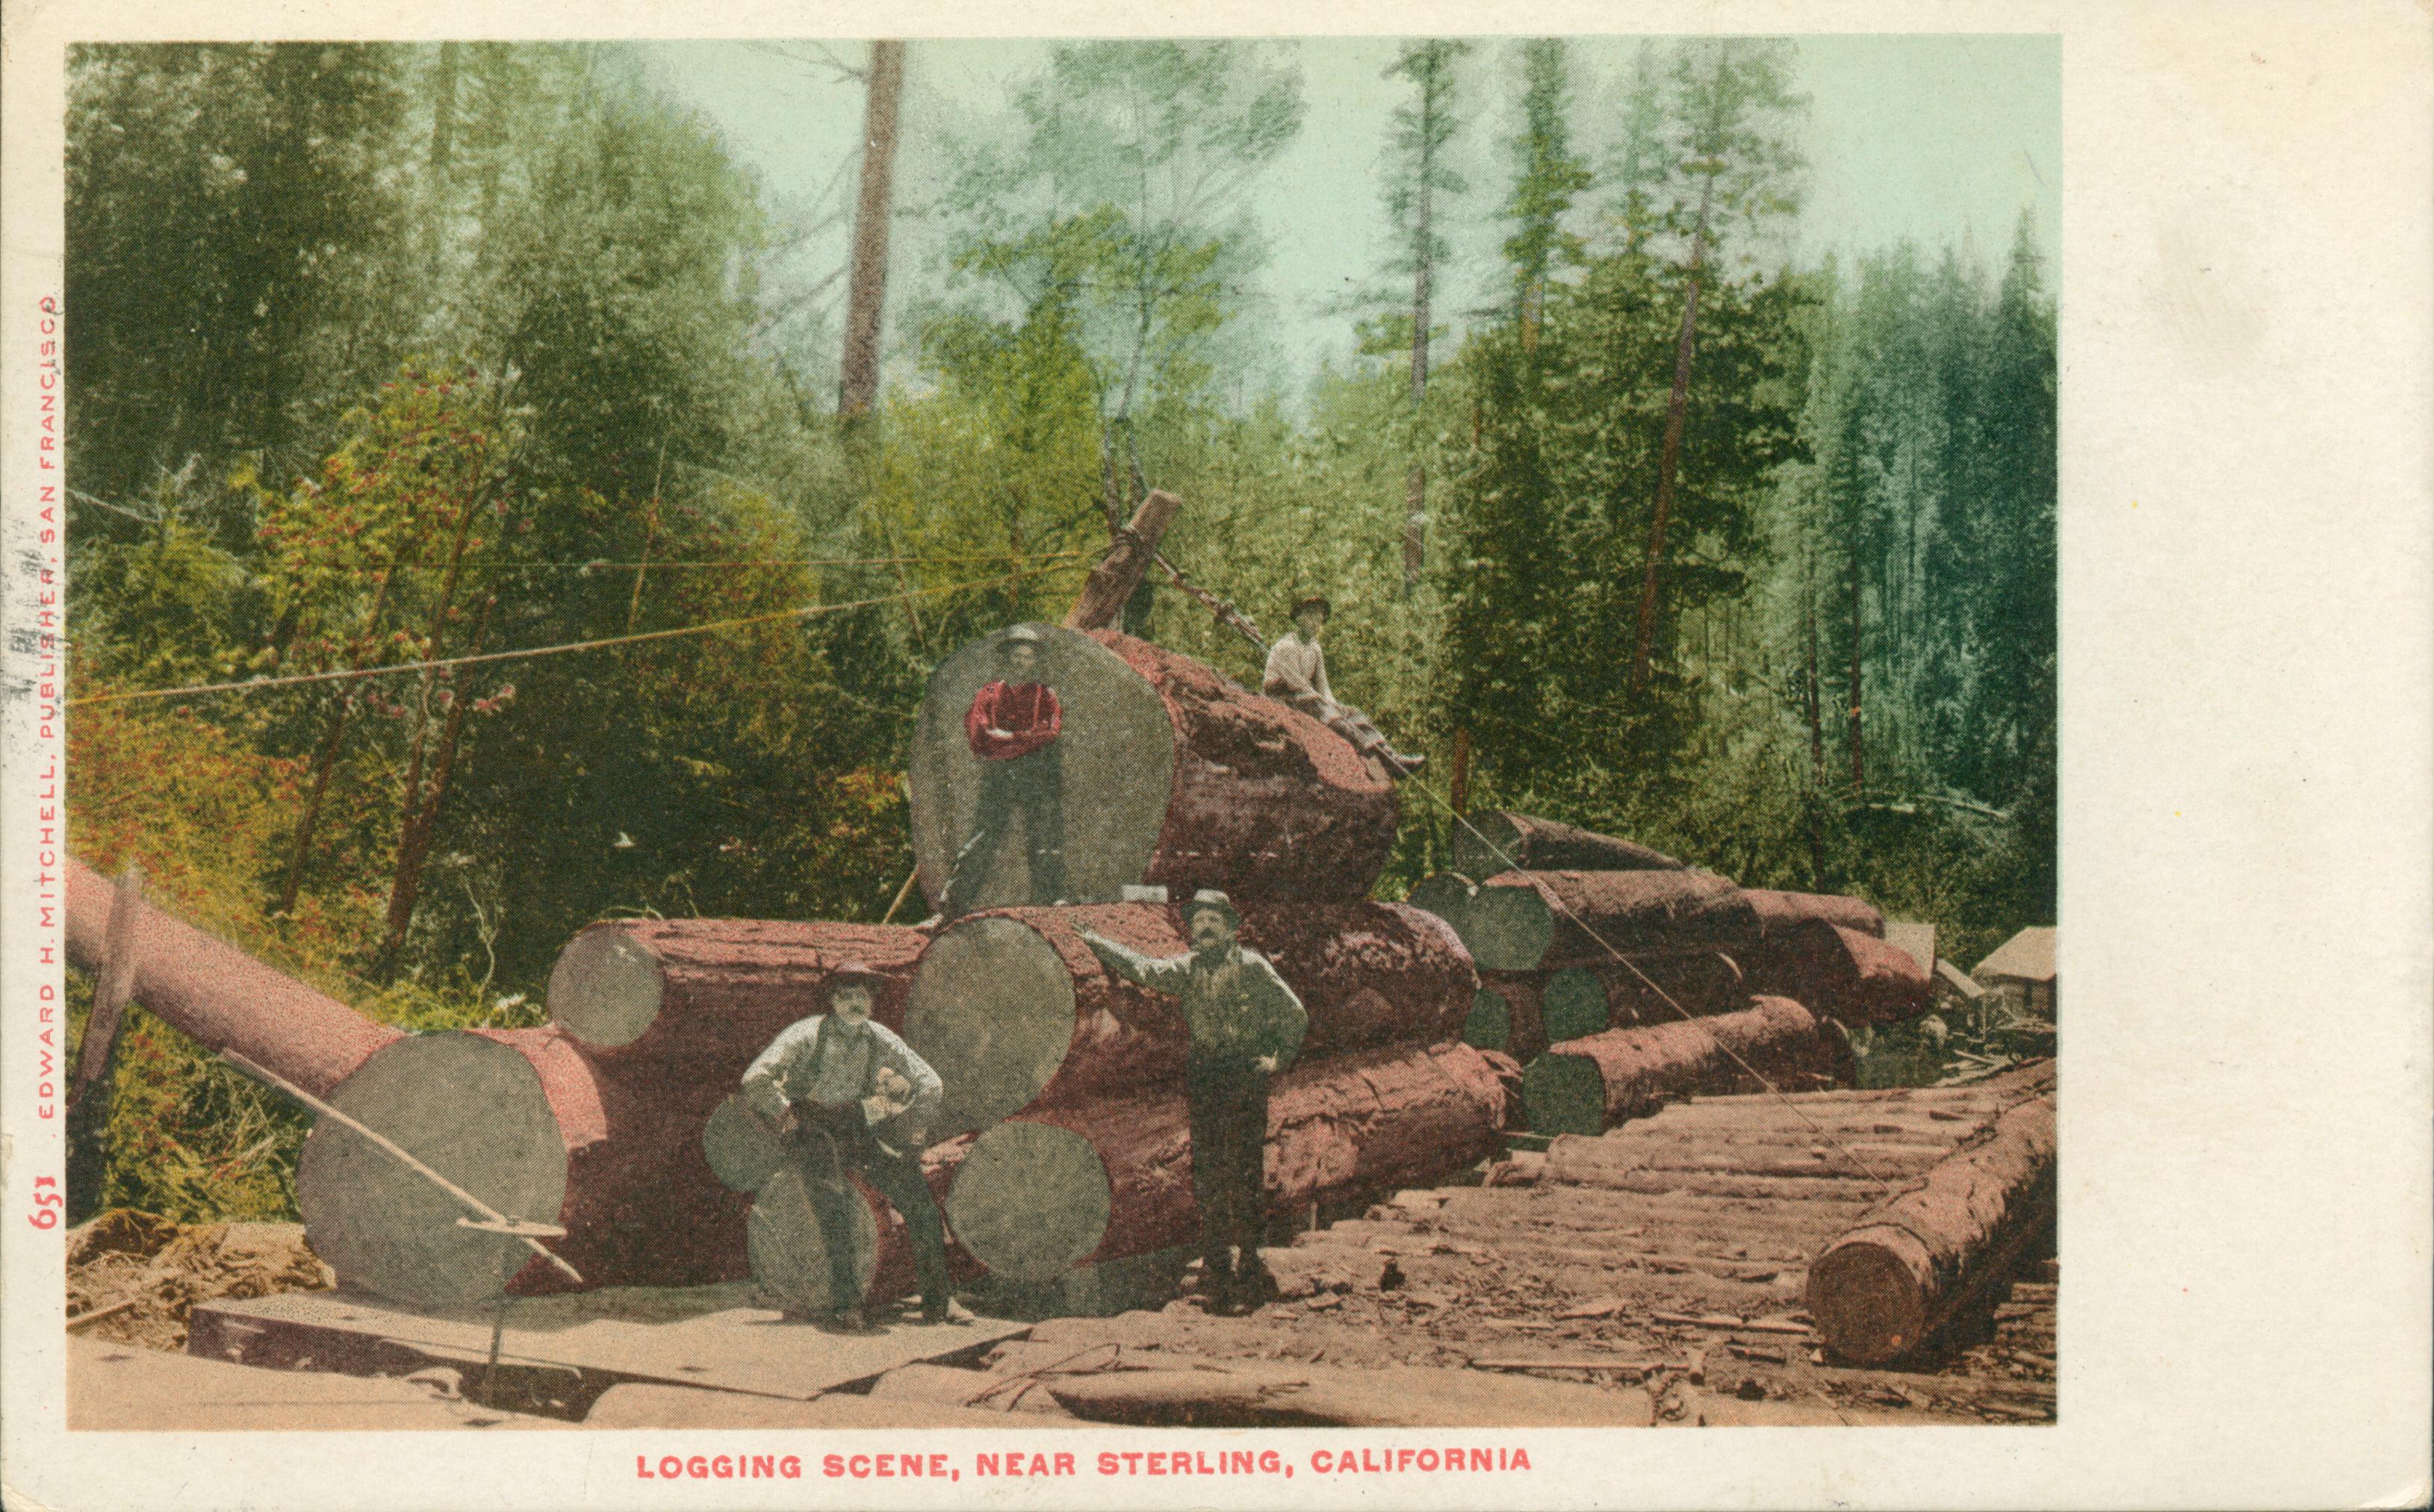 Shows several lumberjacks posed around logs